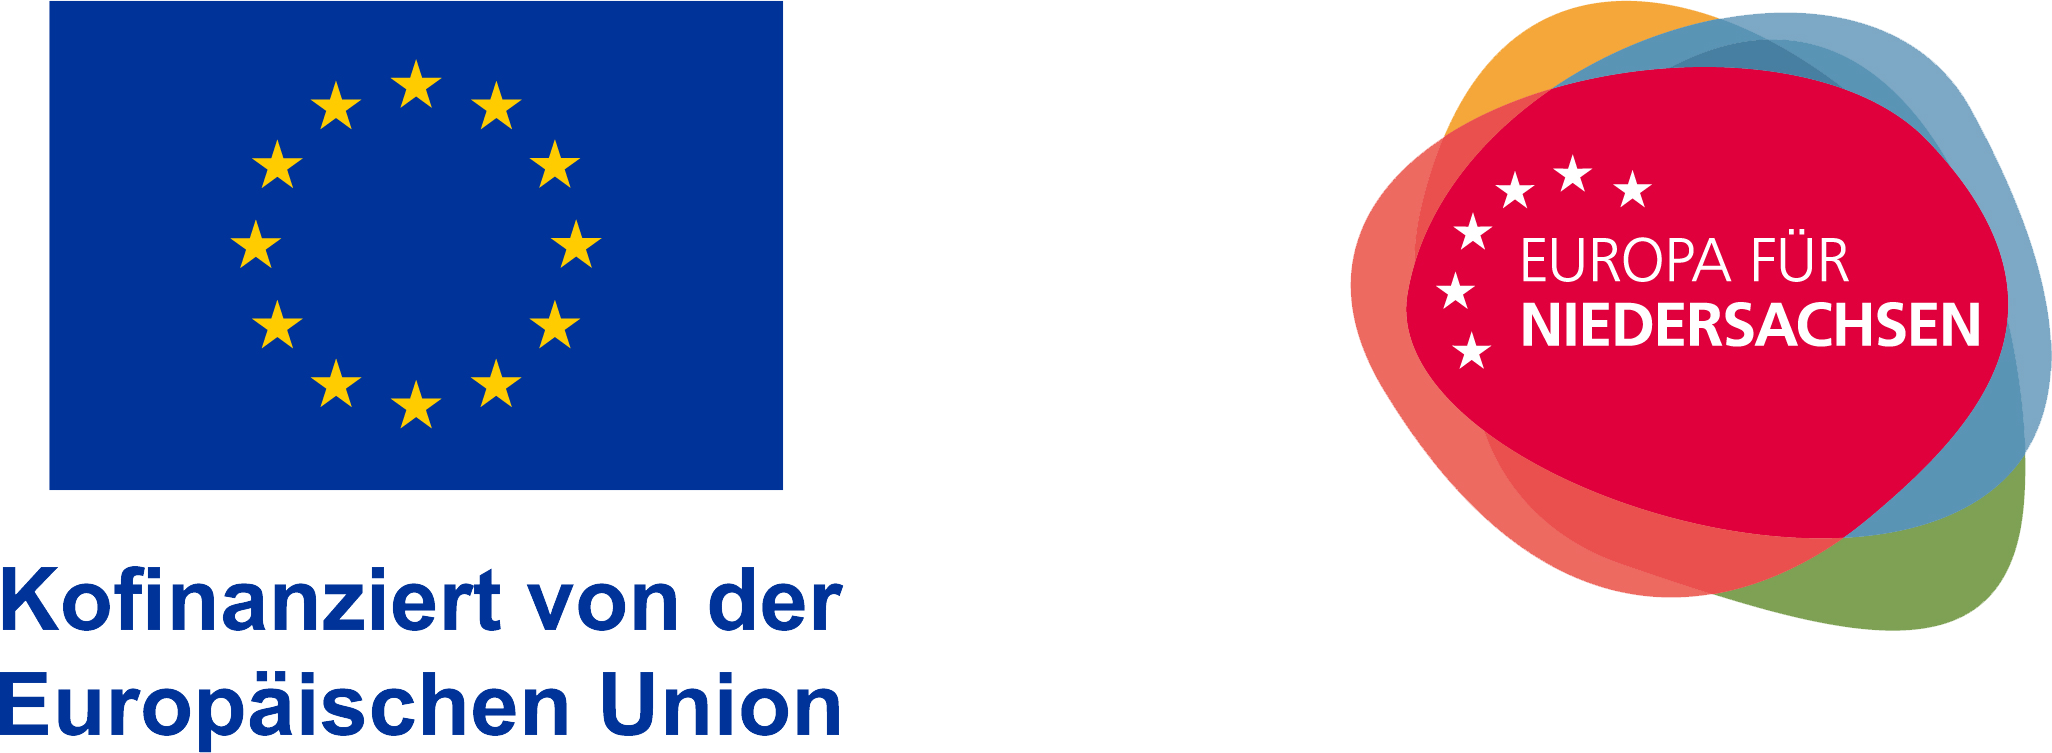 ESF Logo